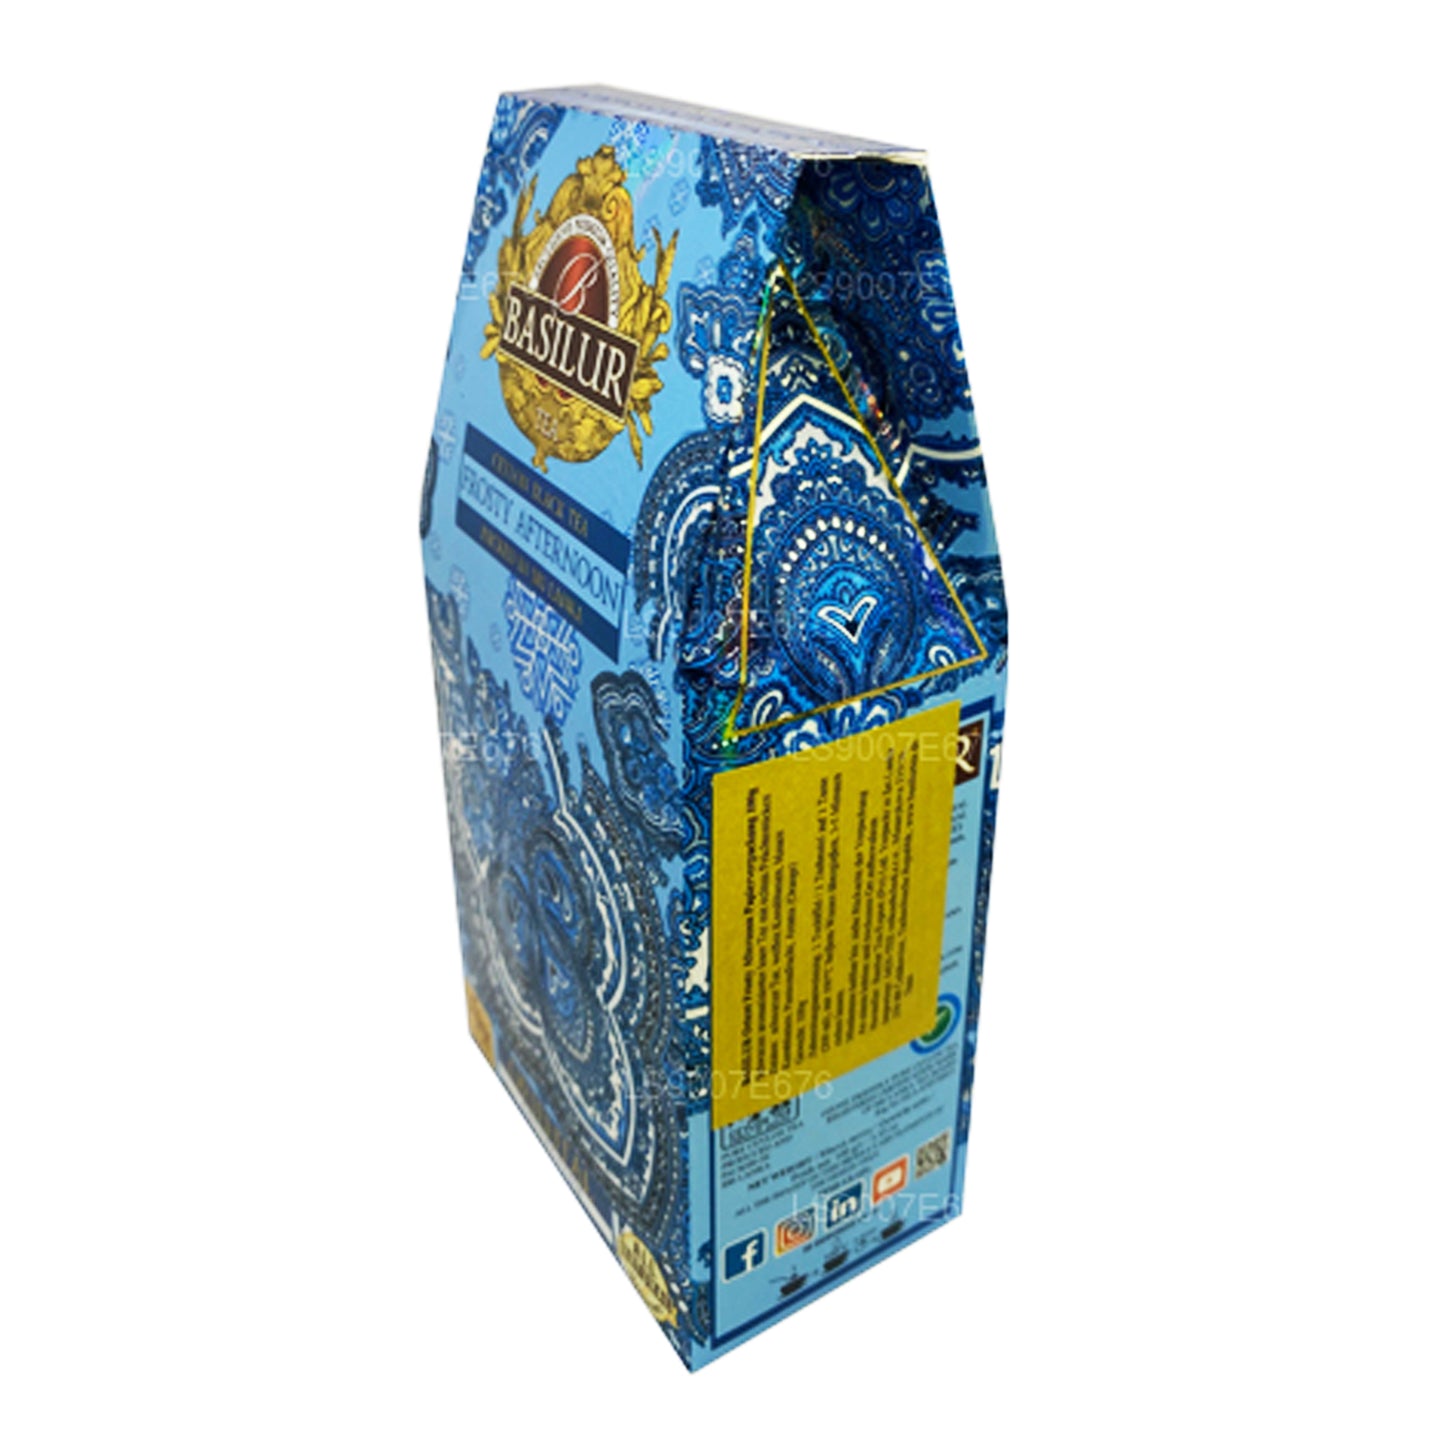 Basilur (Oriental) Frosty Afternoon Ceylon zwarte thee (100 g)